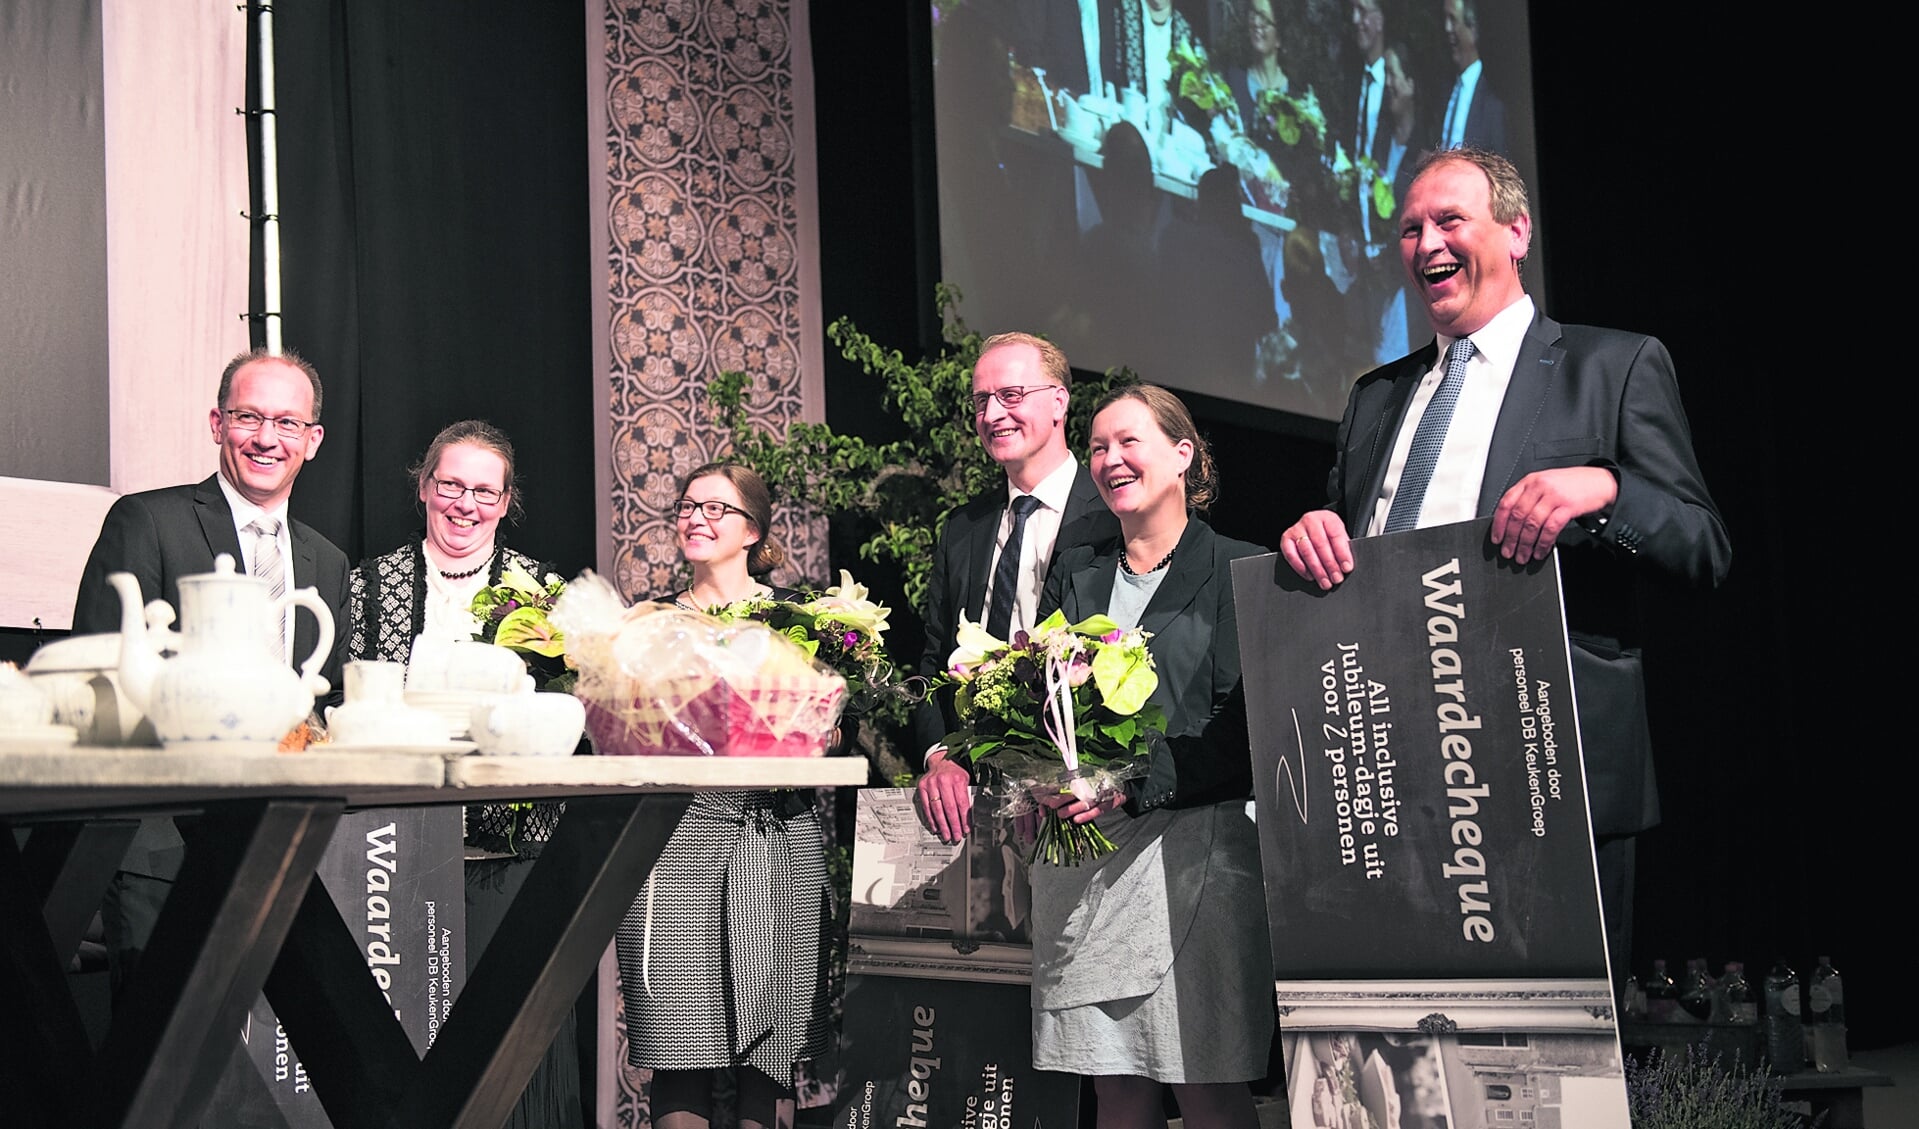 De directie van de DB KeukenGroep: Arjan en Dineke van Dijke, v.r.n.l., Aart en Marja de Bruin en Petra en Willem van Lit genieten van de cadeaus van
het personeel